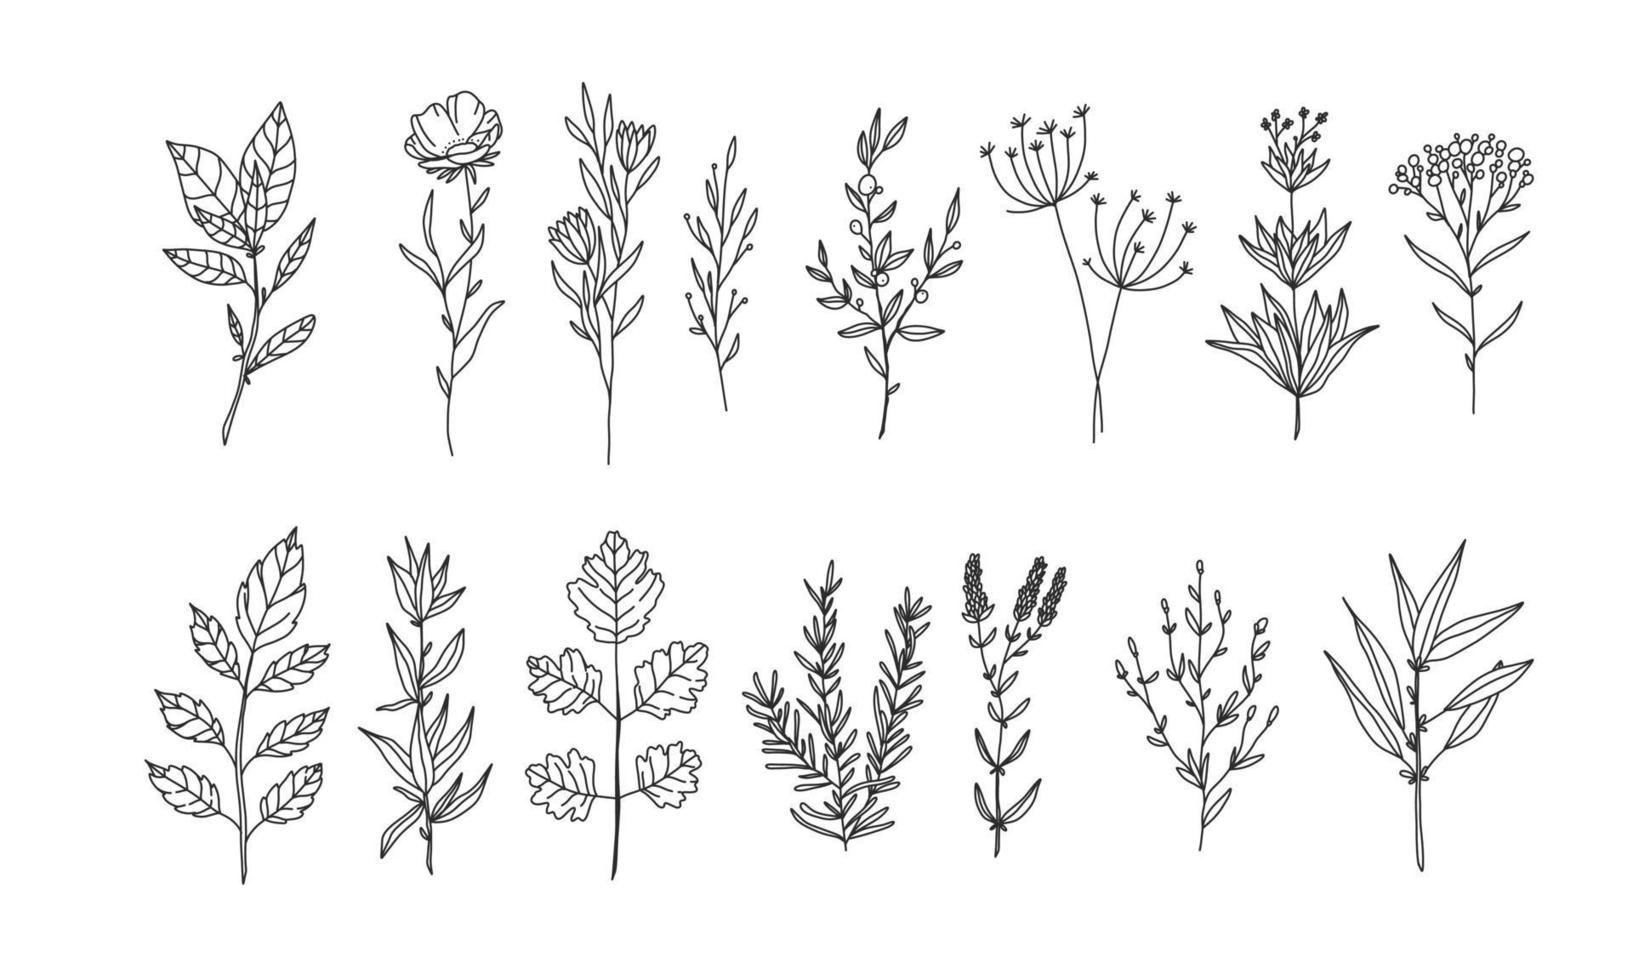 conjunto de elementos florales dibujados a mano para su diseño, ilustración de hojas y flores para crear un diseño romántico o vintage, gráfico aislado de plantas muy fácil de agregar a su proyecto de diseño vector